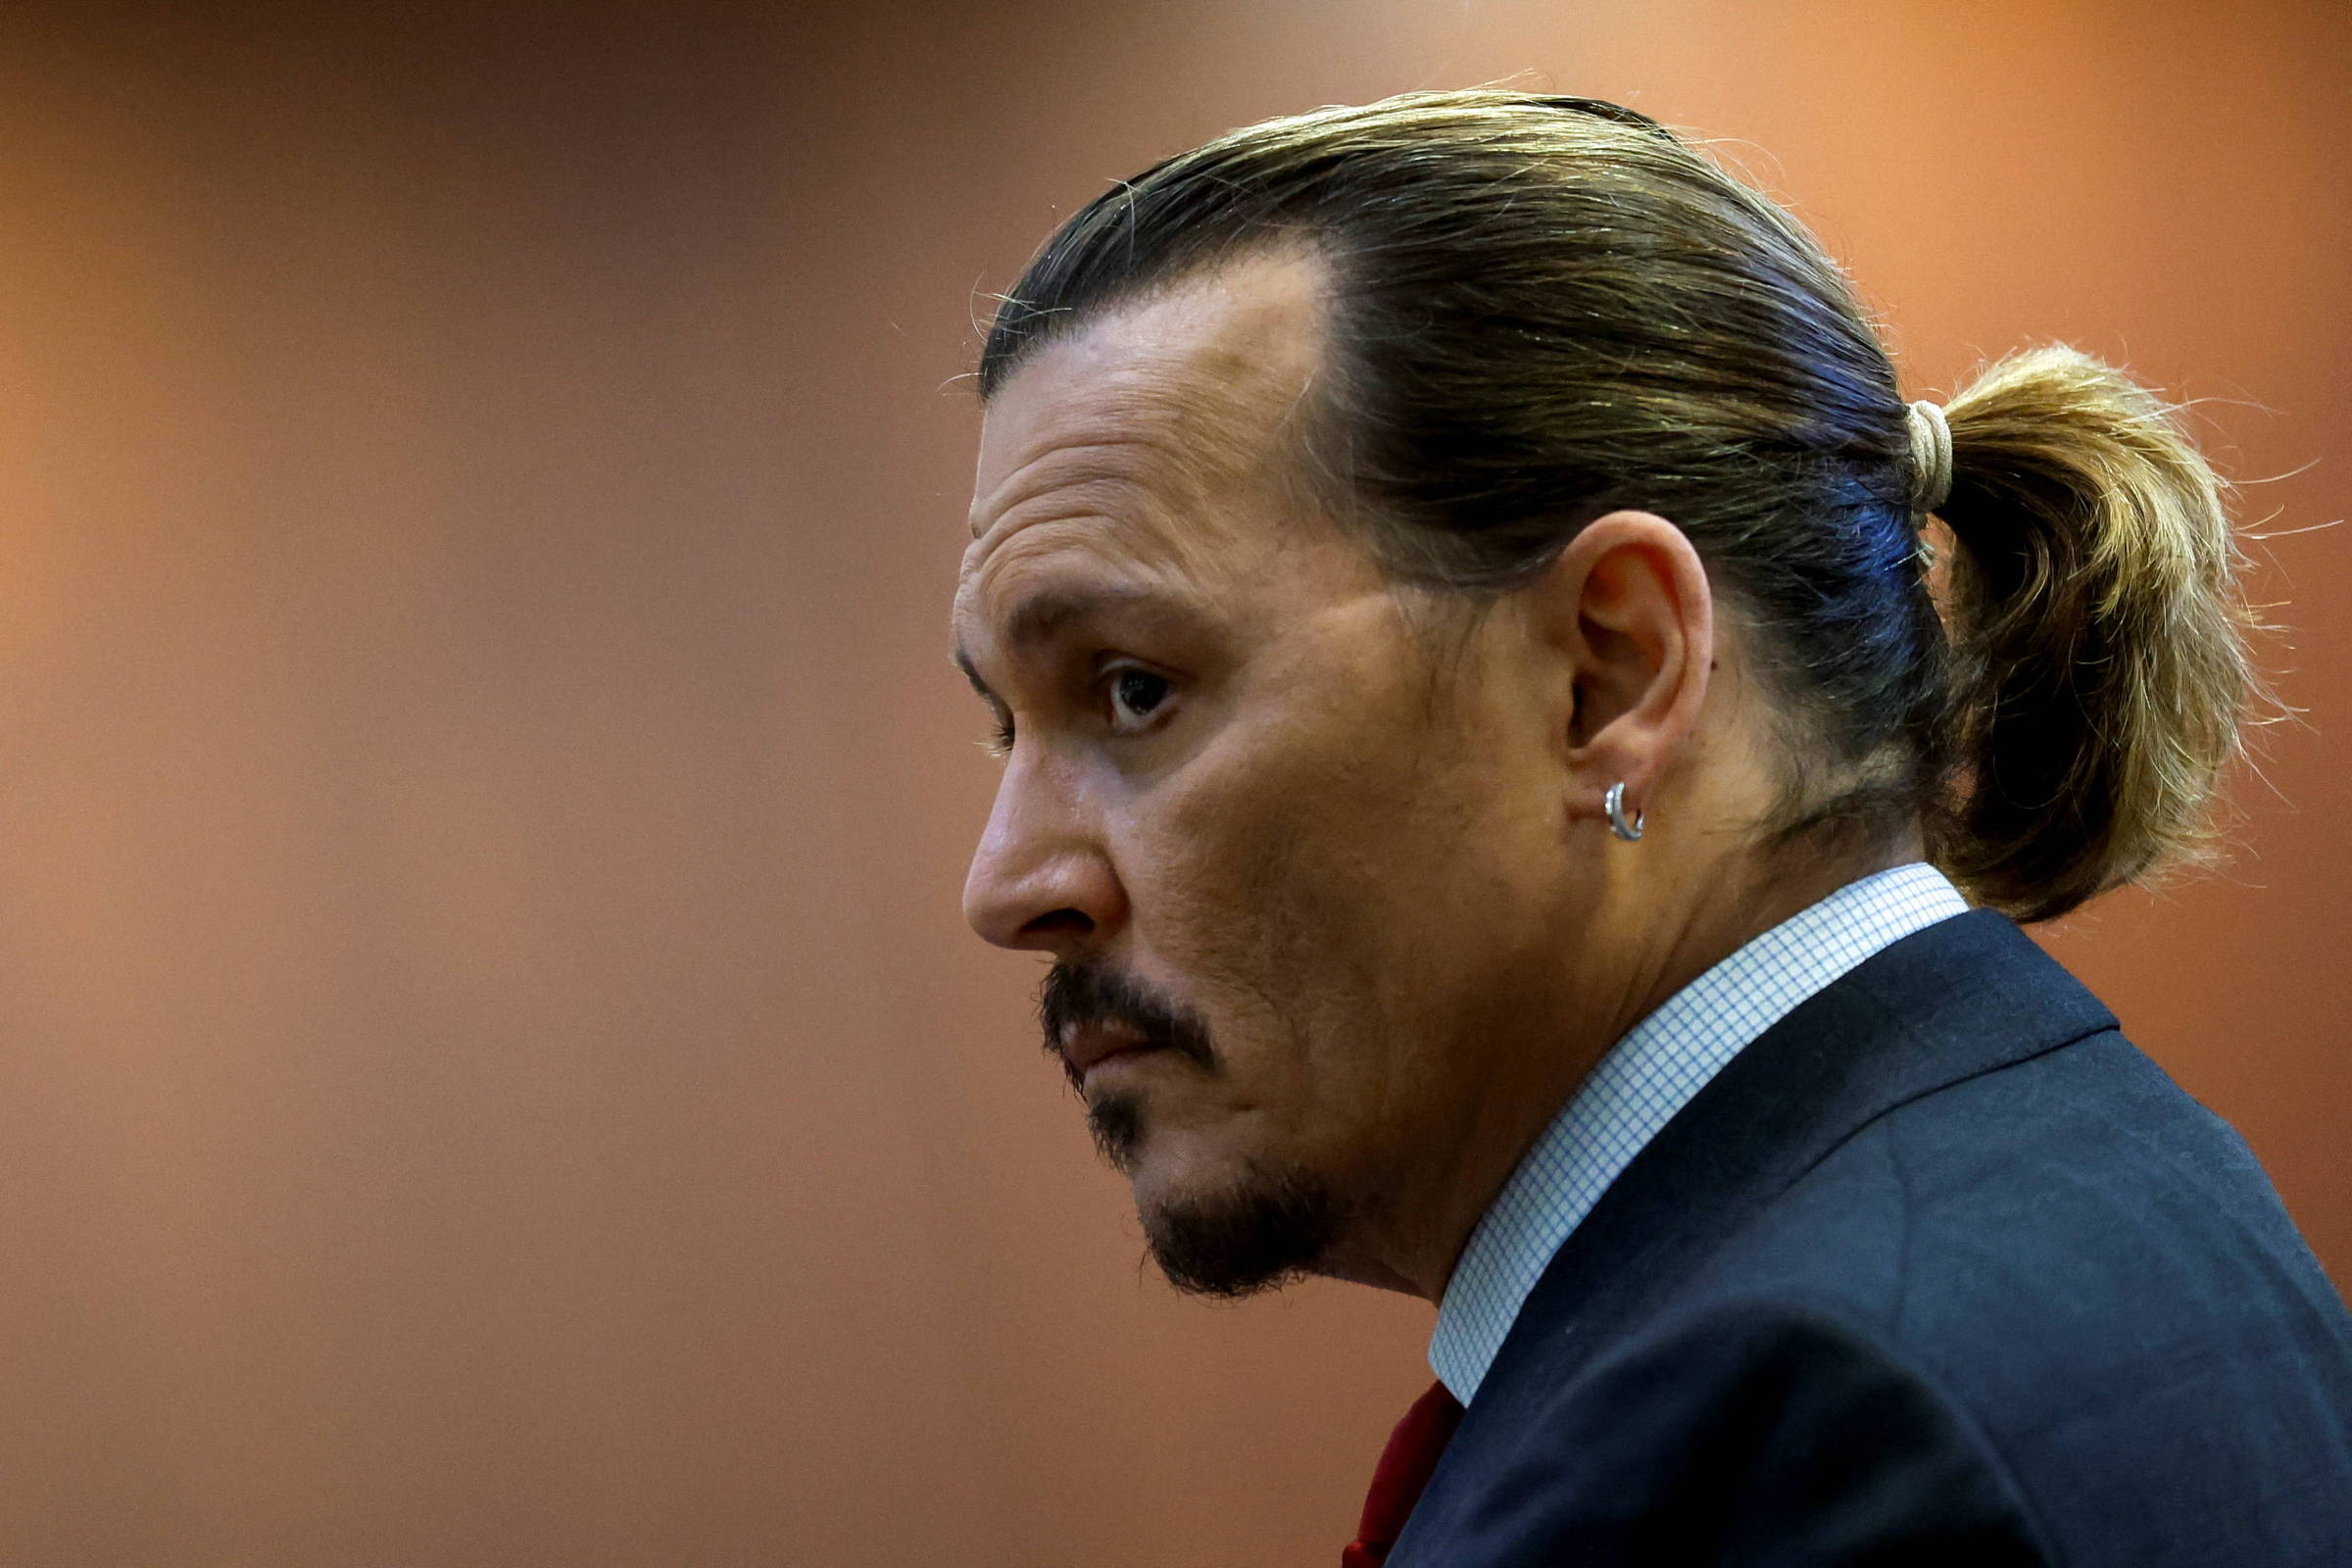 Termina interrogatório de Johnny Depp em julgamento contra sua ex